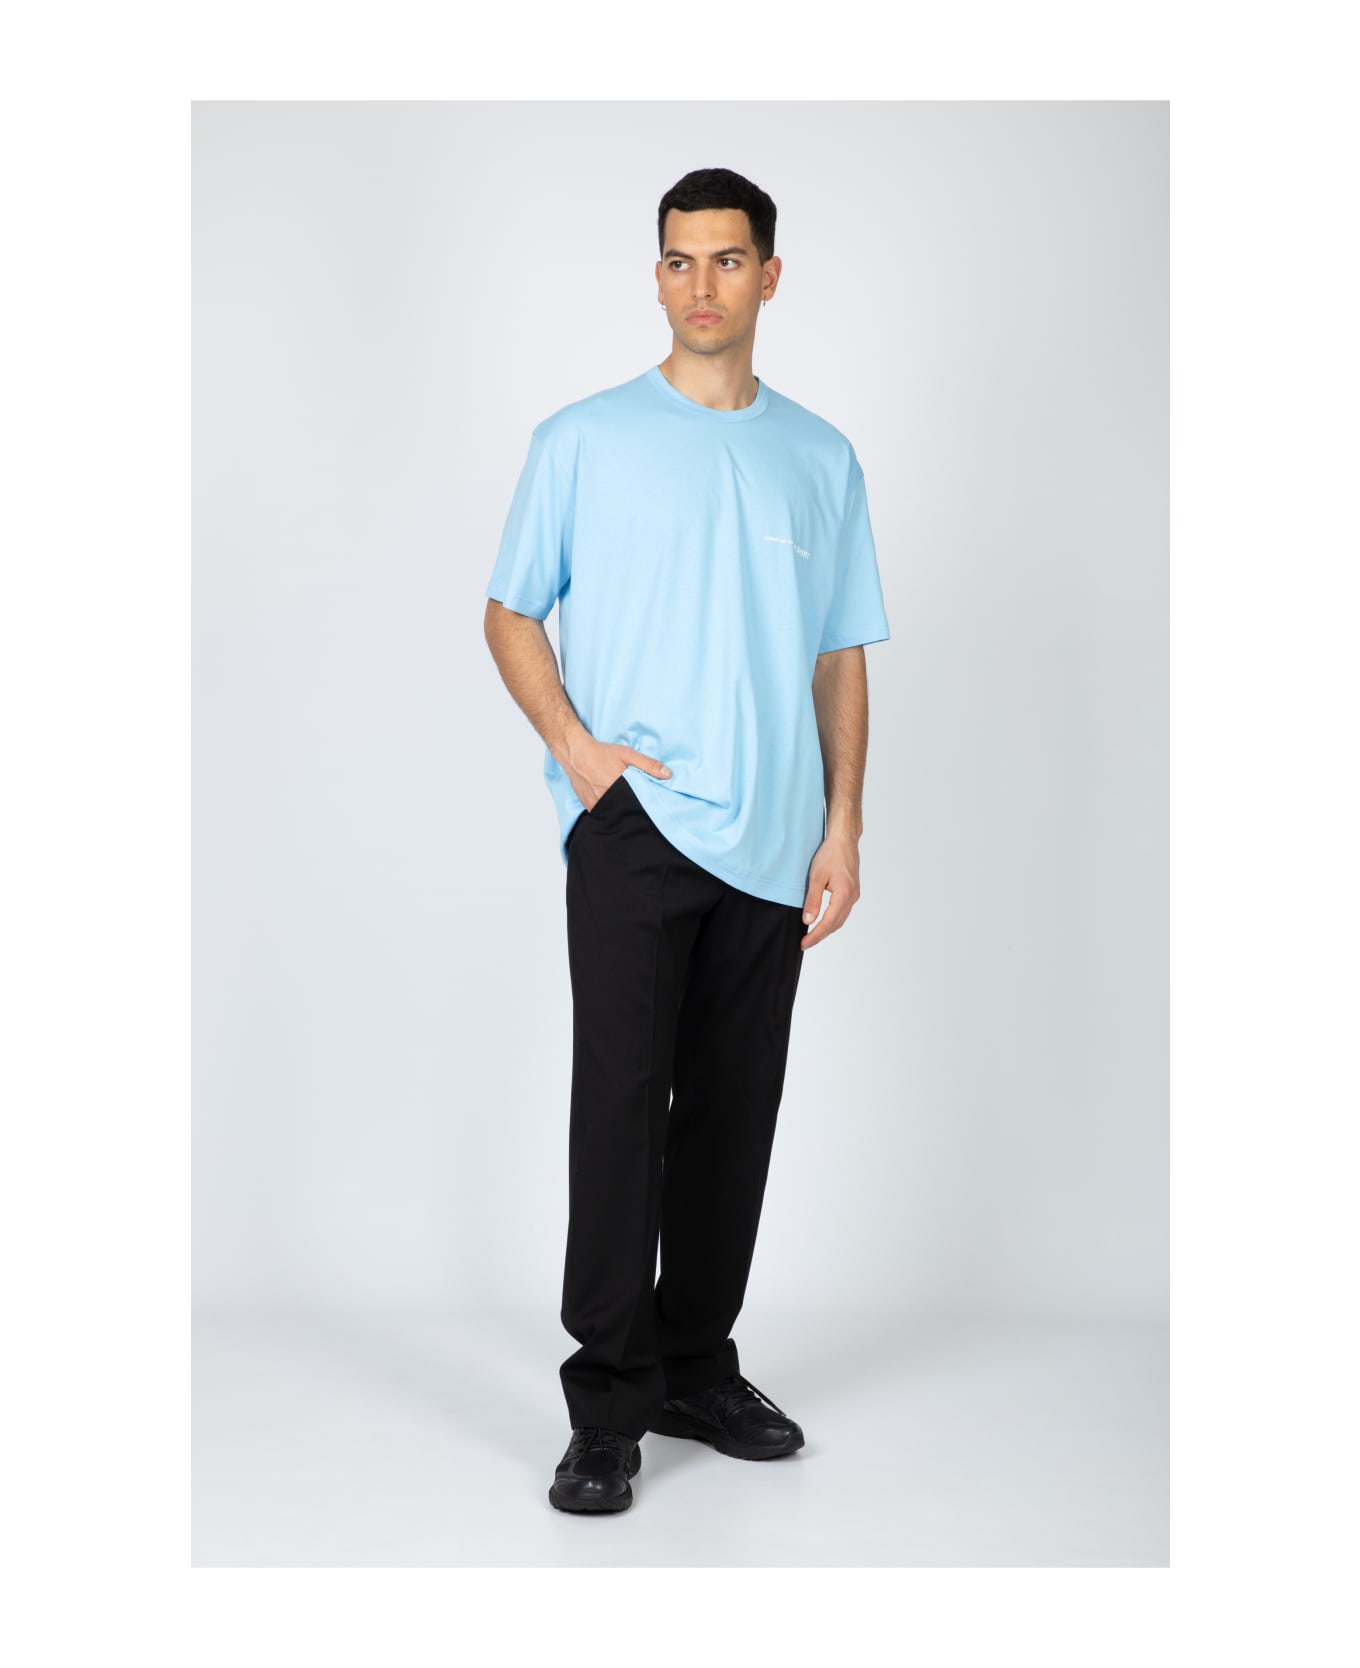 Comme des Garçons Shirt Mens T-shirt Knit Sky blue cotton oversize t-shirt with chest logo - Celeste シャツ